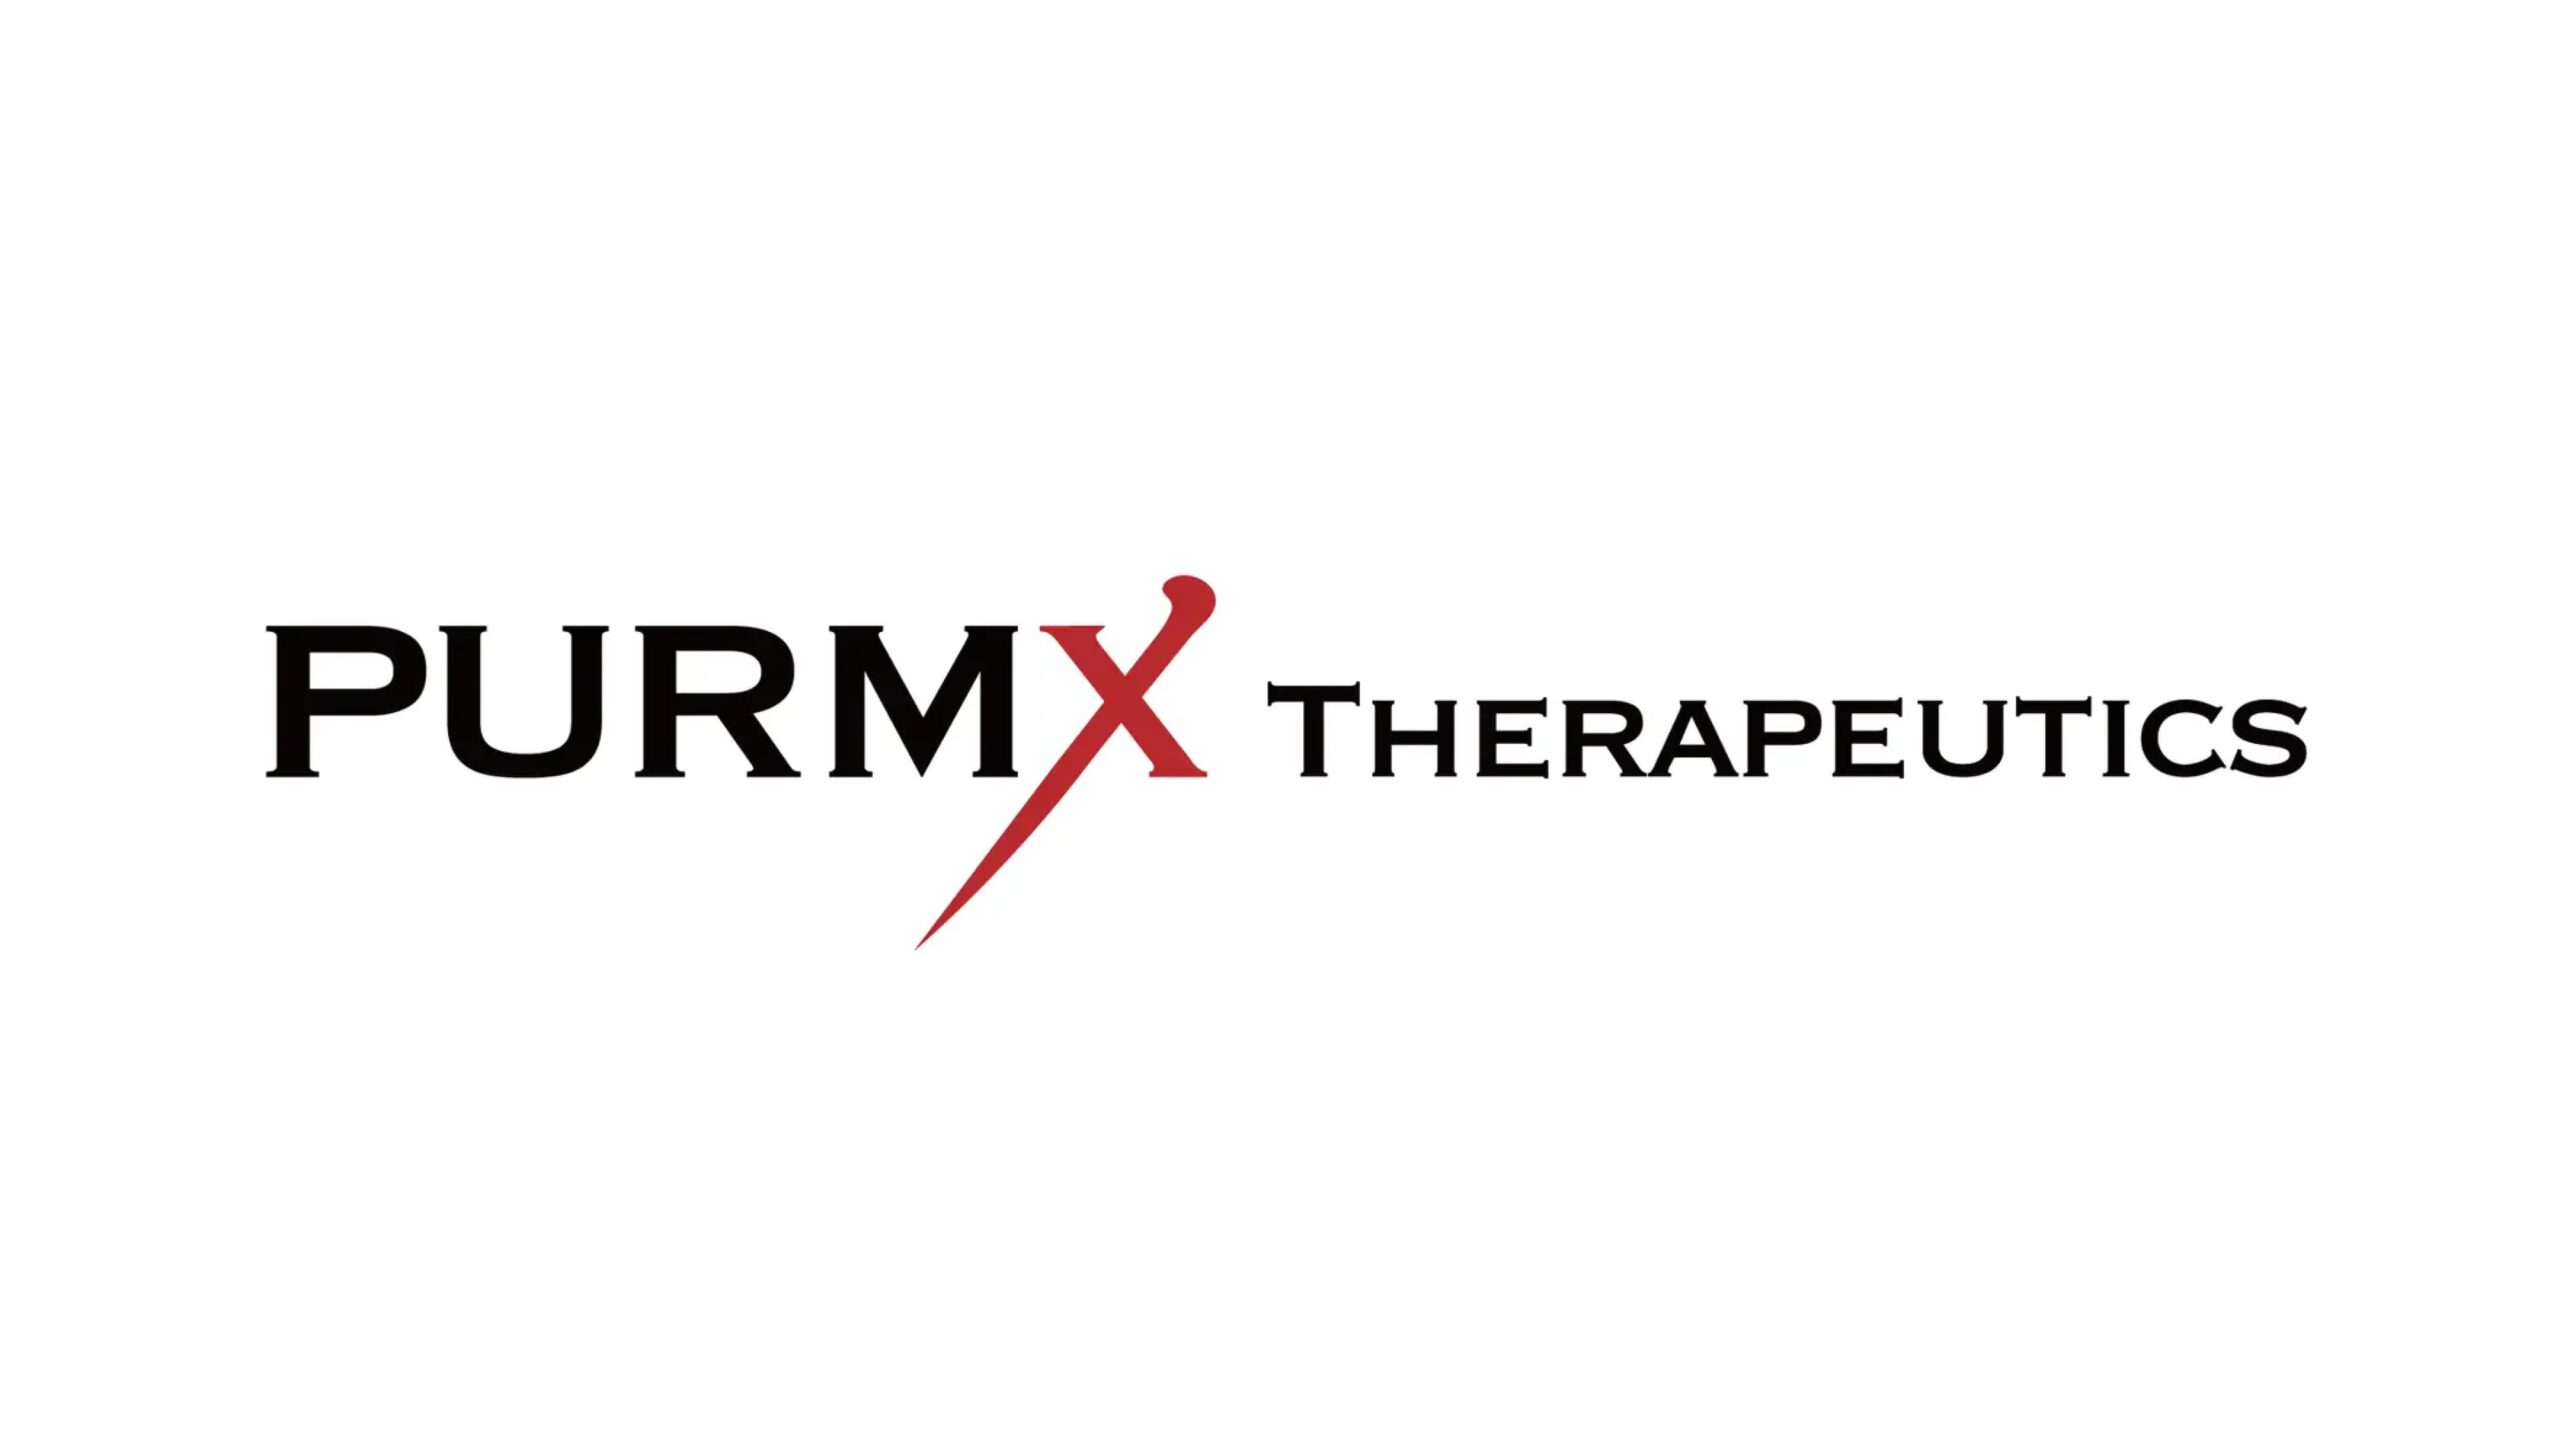 株式会社PURMX Therapeutics、第三者割当増資により資金調達を実施